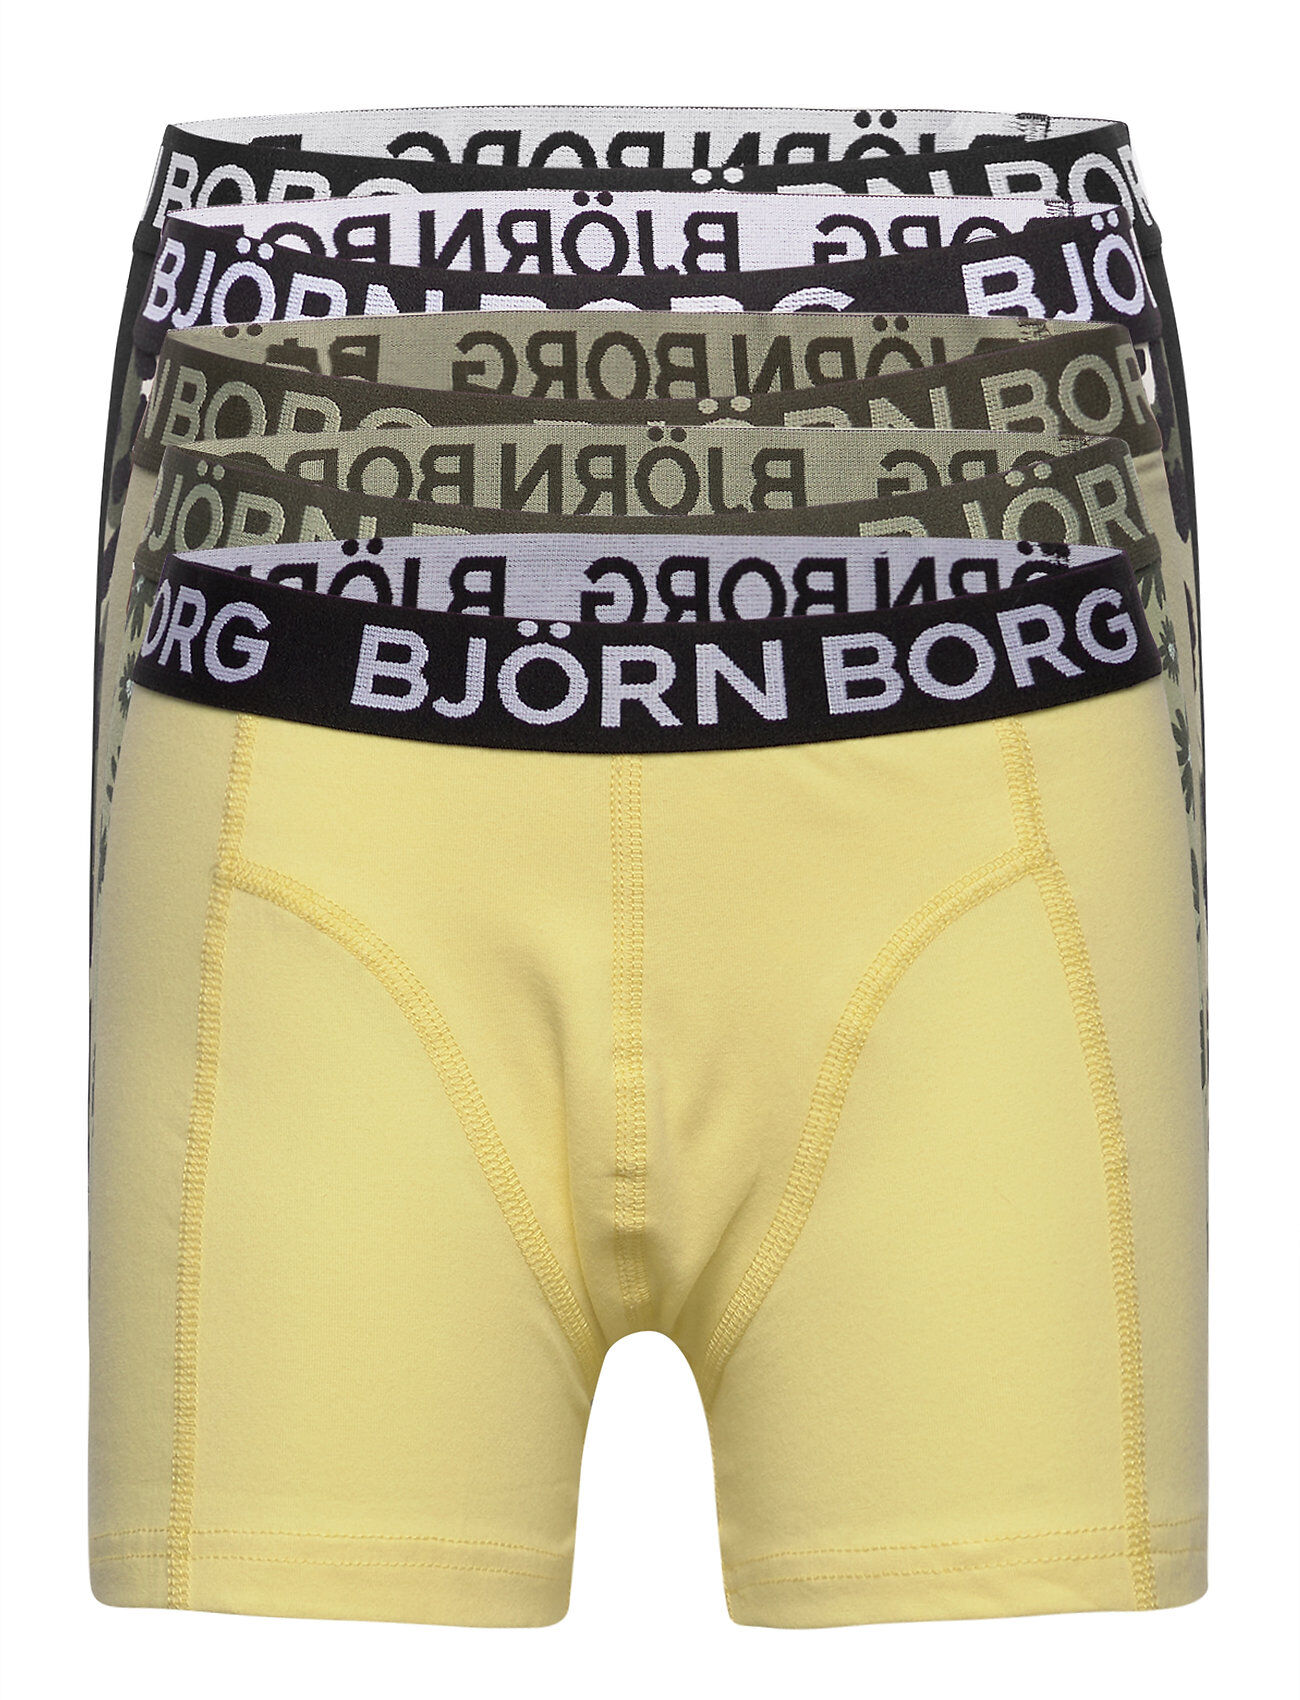 Björn Borg Shorts Sammy Bb Fourflower Night & Underwear Underwear Underpants Grønn Björn Borg